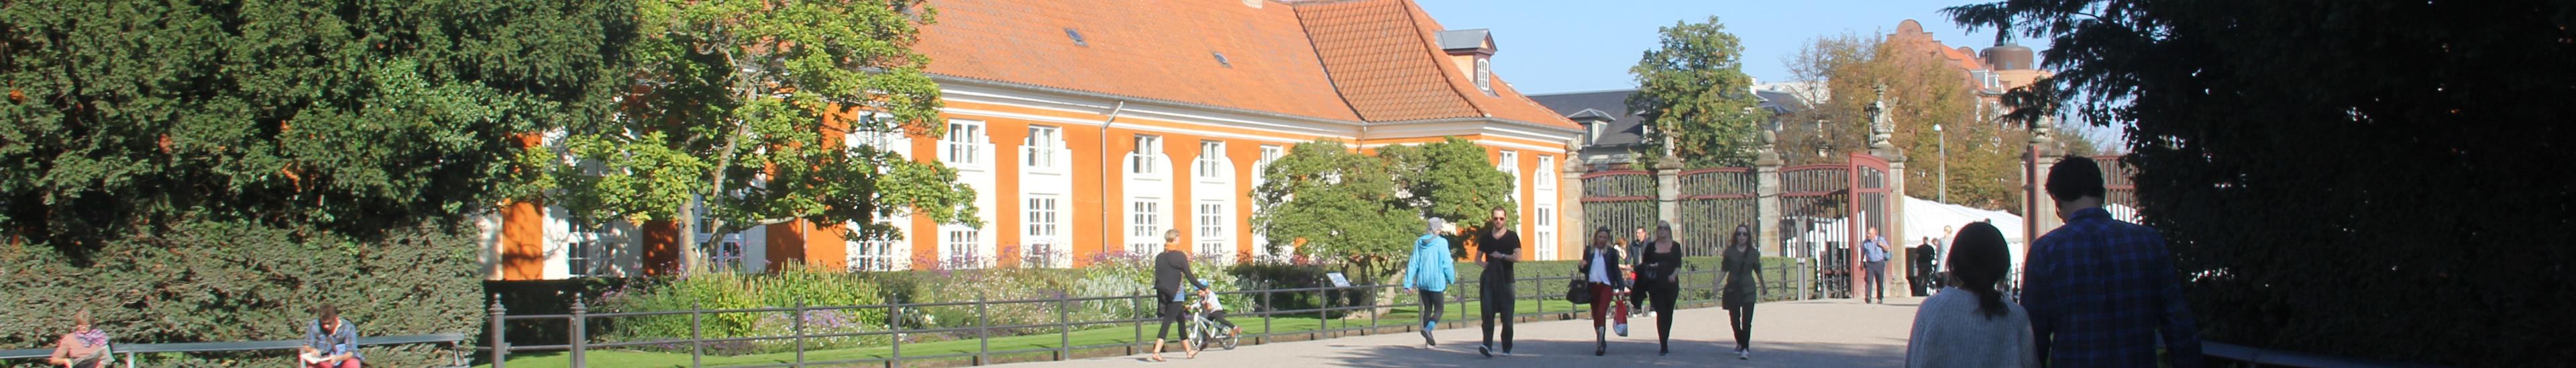 Banner image for Frederiksberg on GigsGuide